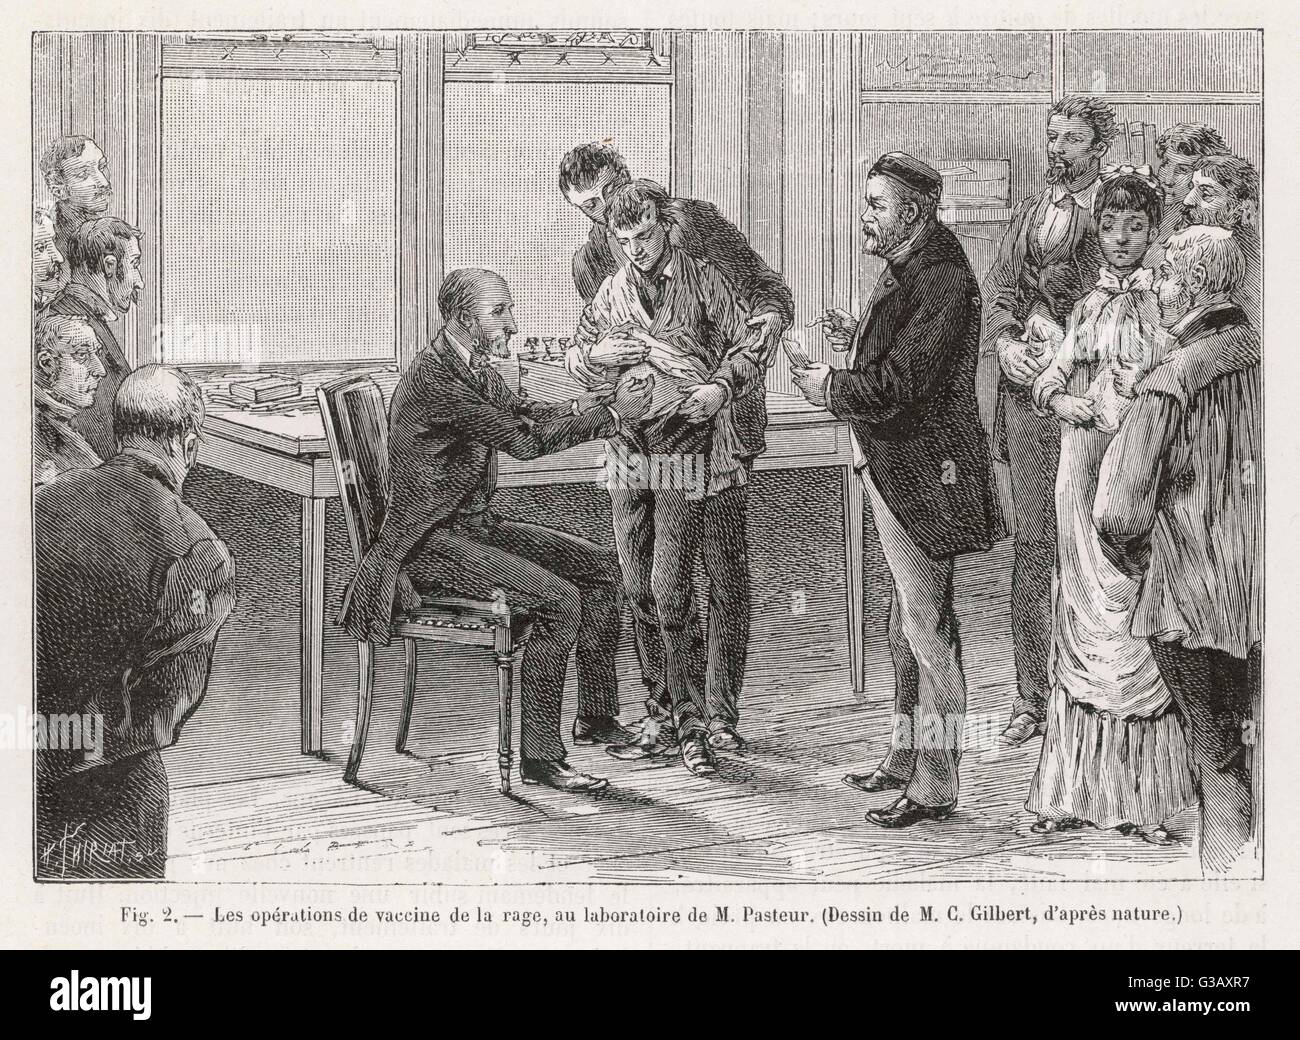 Louis Pasteur (1822-1895), französischer Chemiker und Mikrobiologe, betreut eine Impfung gegen Tollwut in seinem Labor.      Datum: 1886 Stockfoto